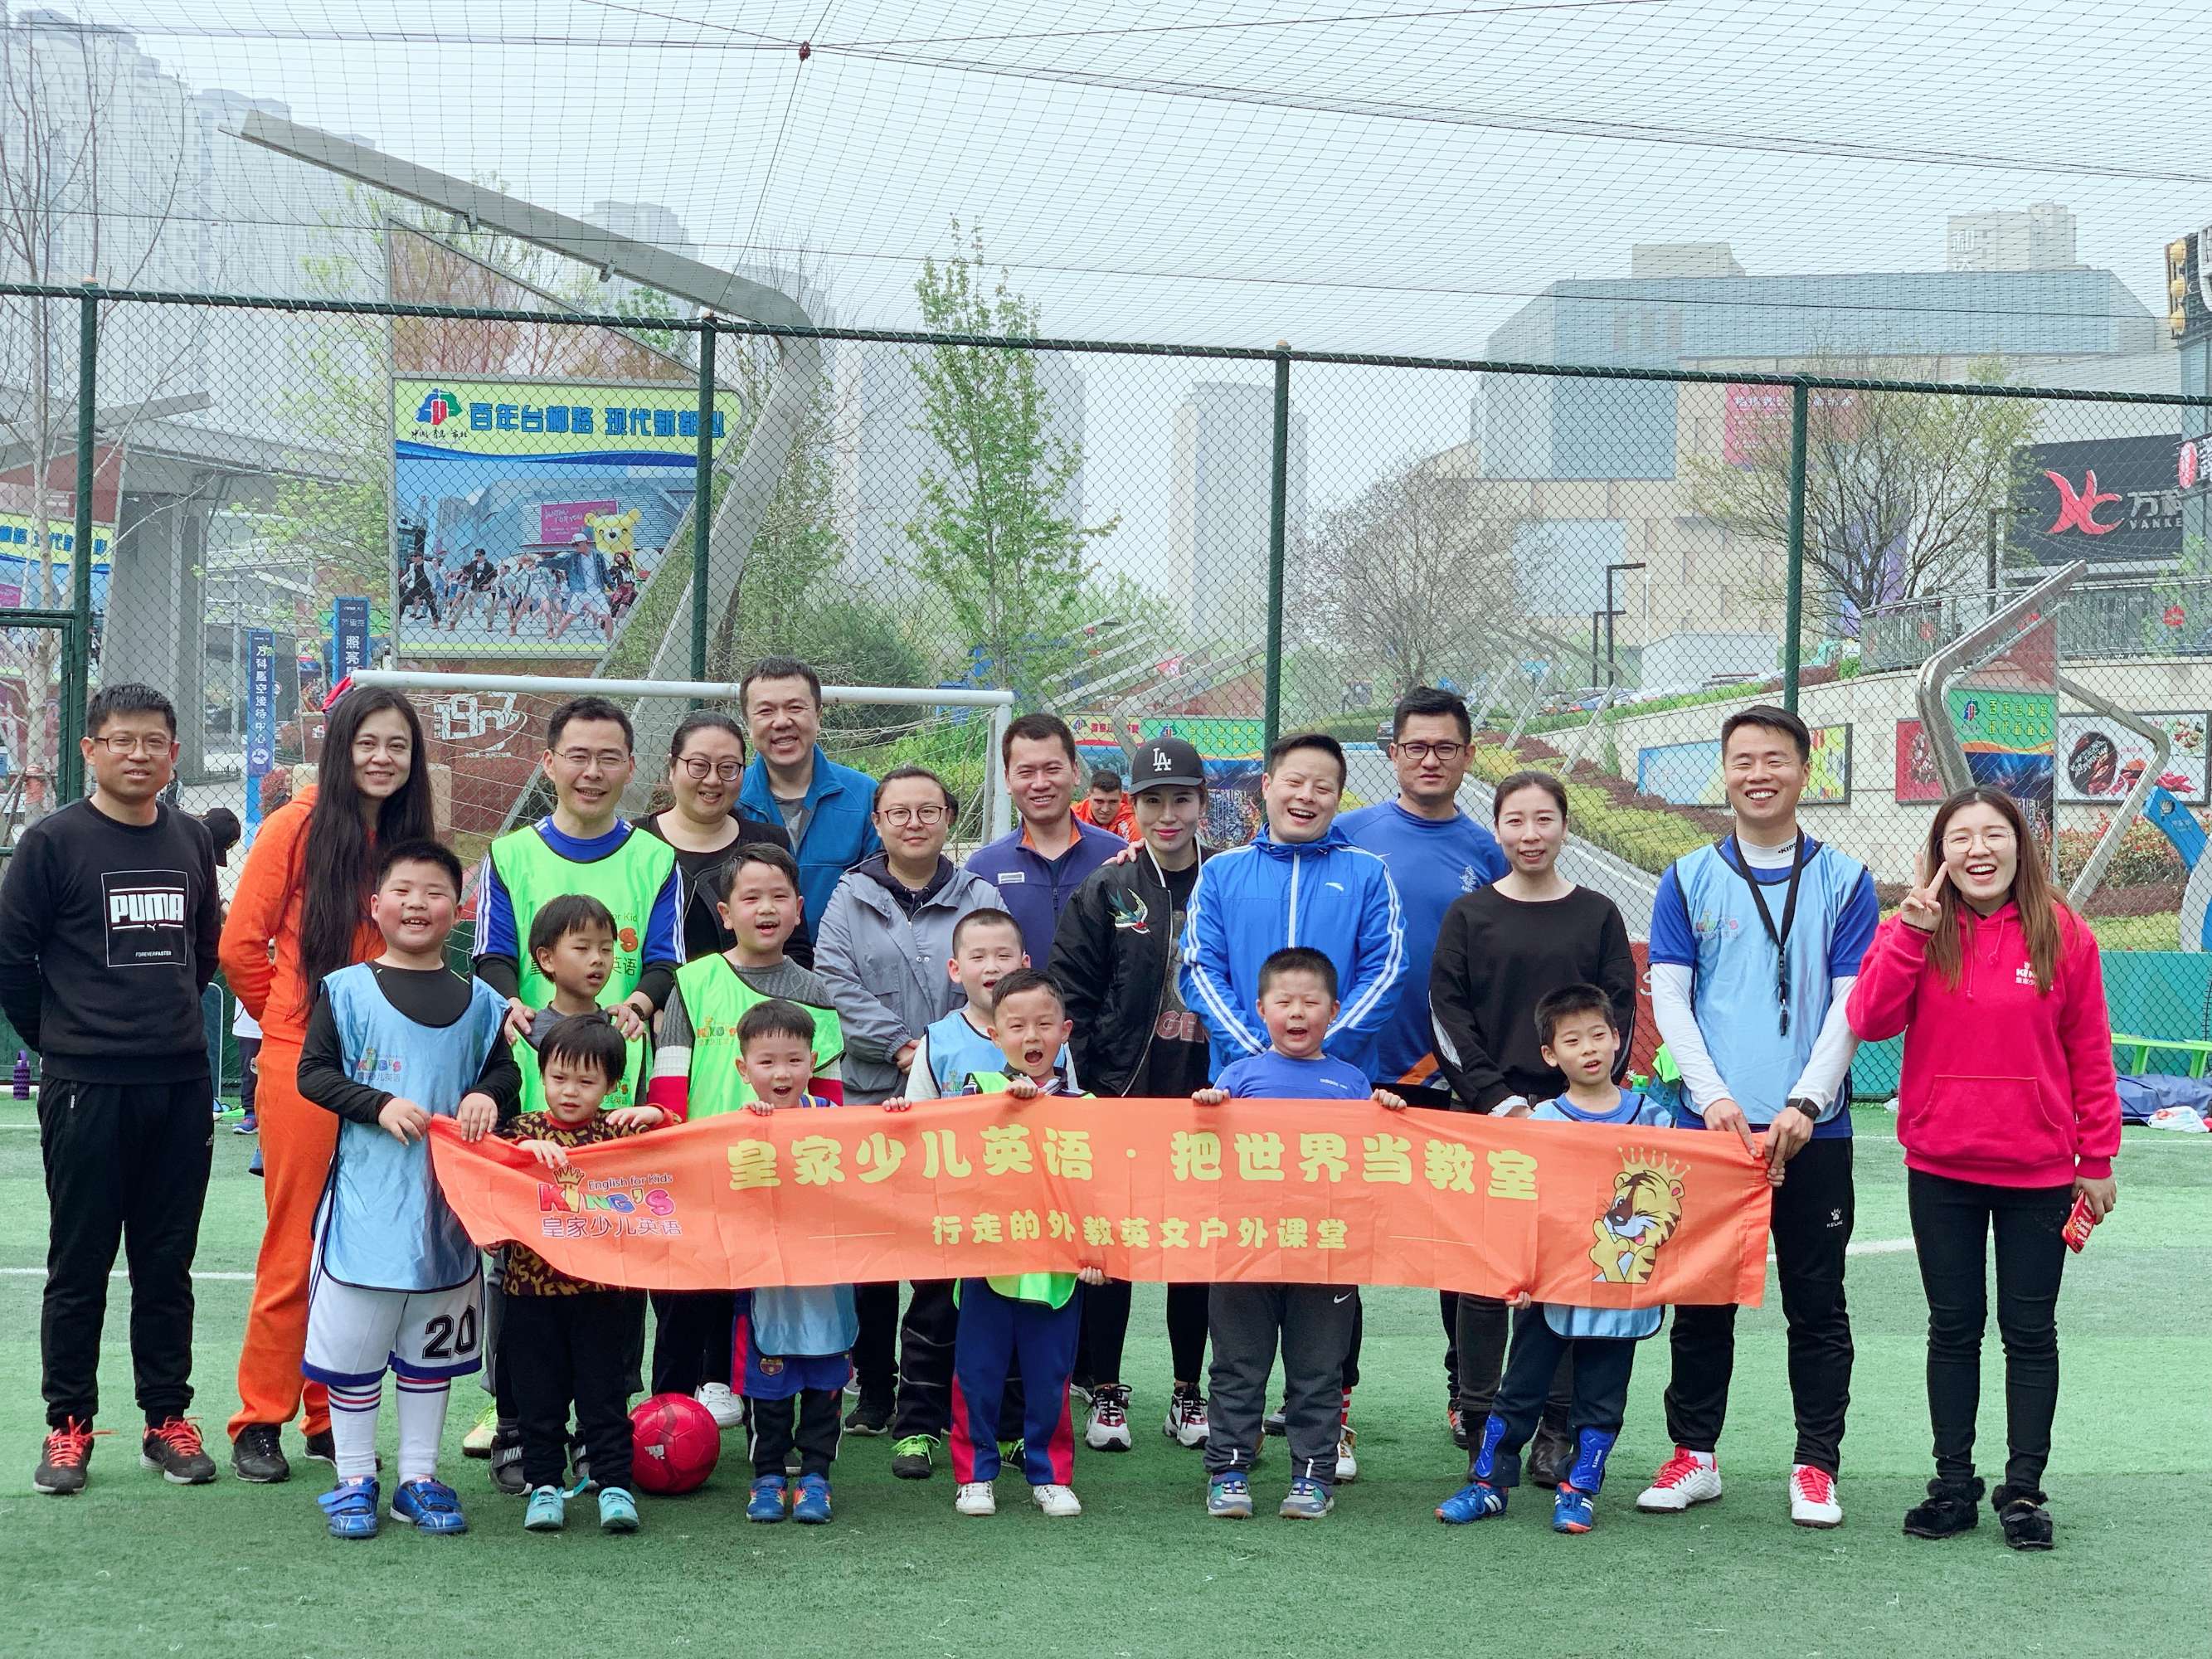 青岛市足球俱乐部与中国足协联手举办“健康校园，快乐足球——中药足球校园行”青岛站活动